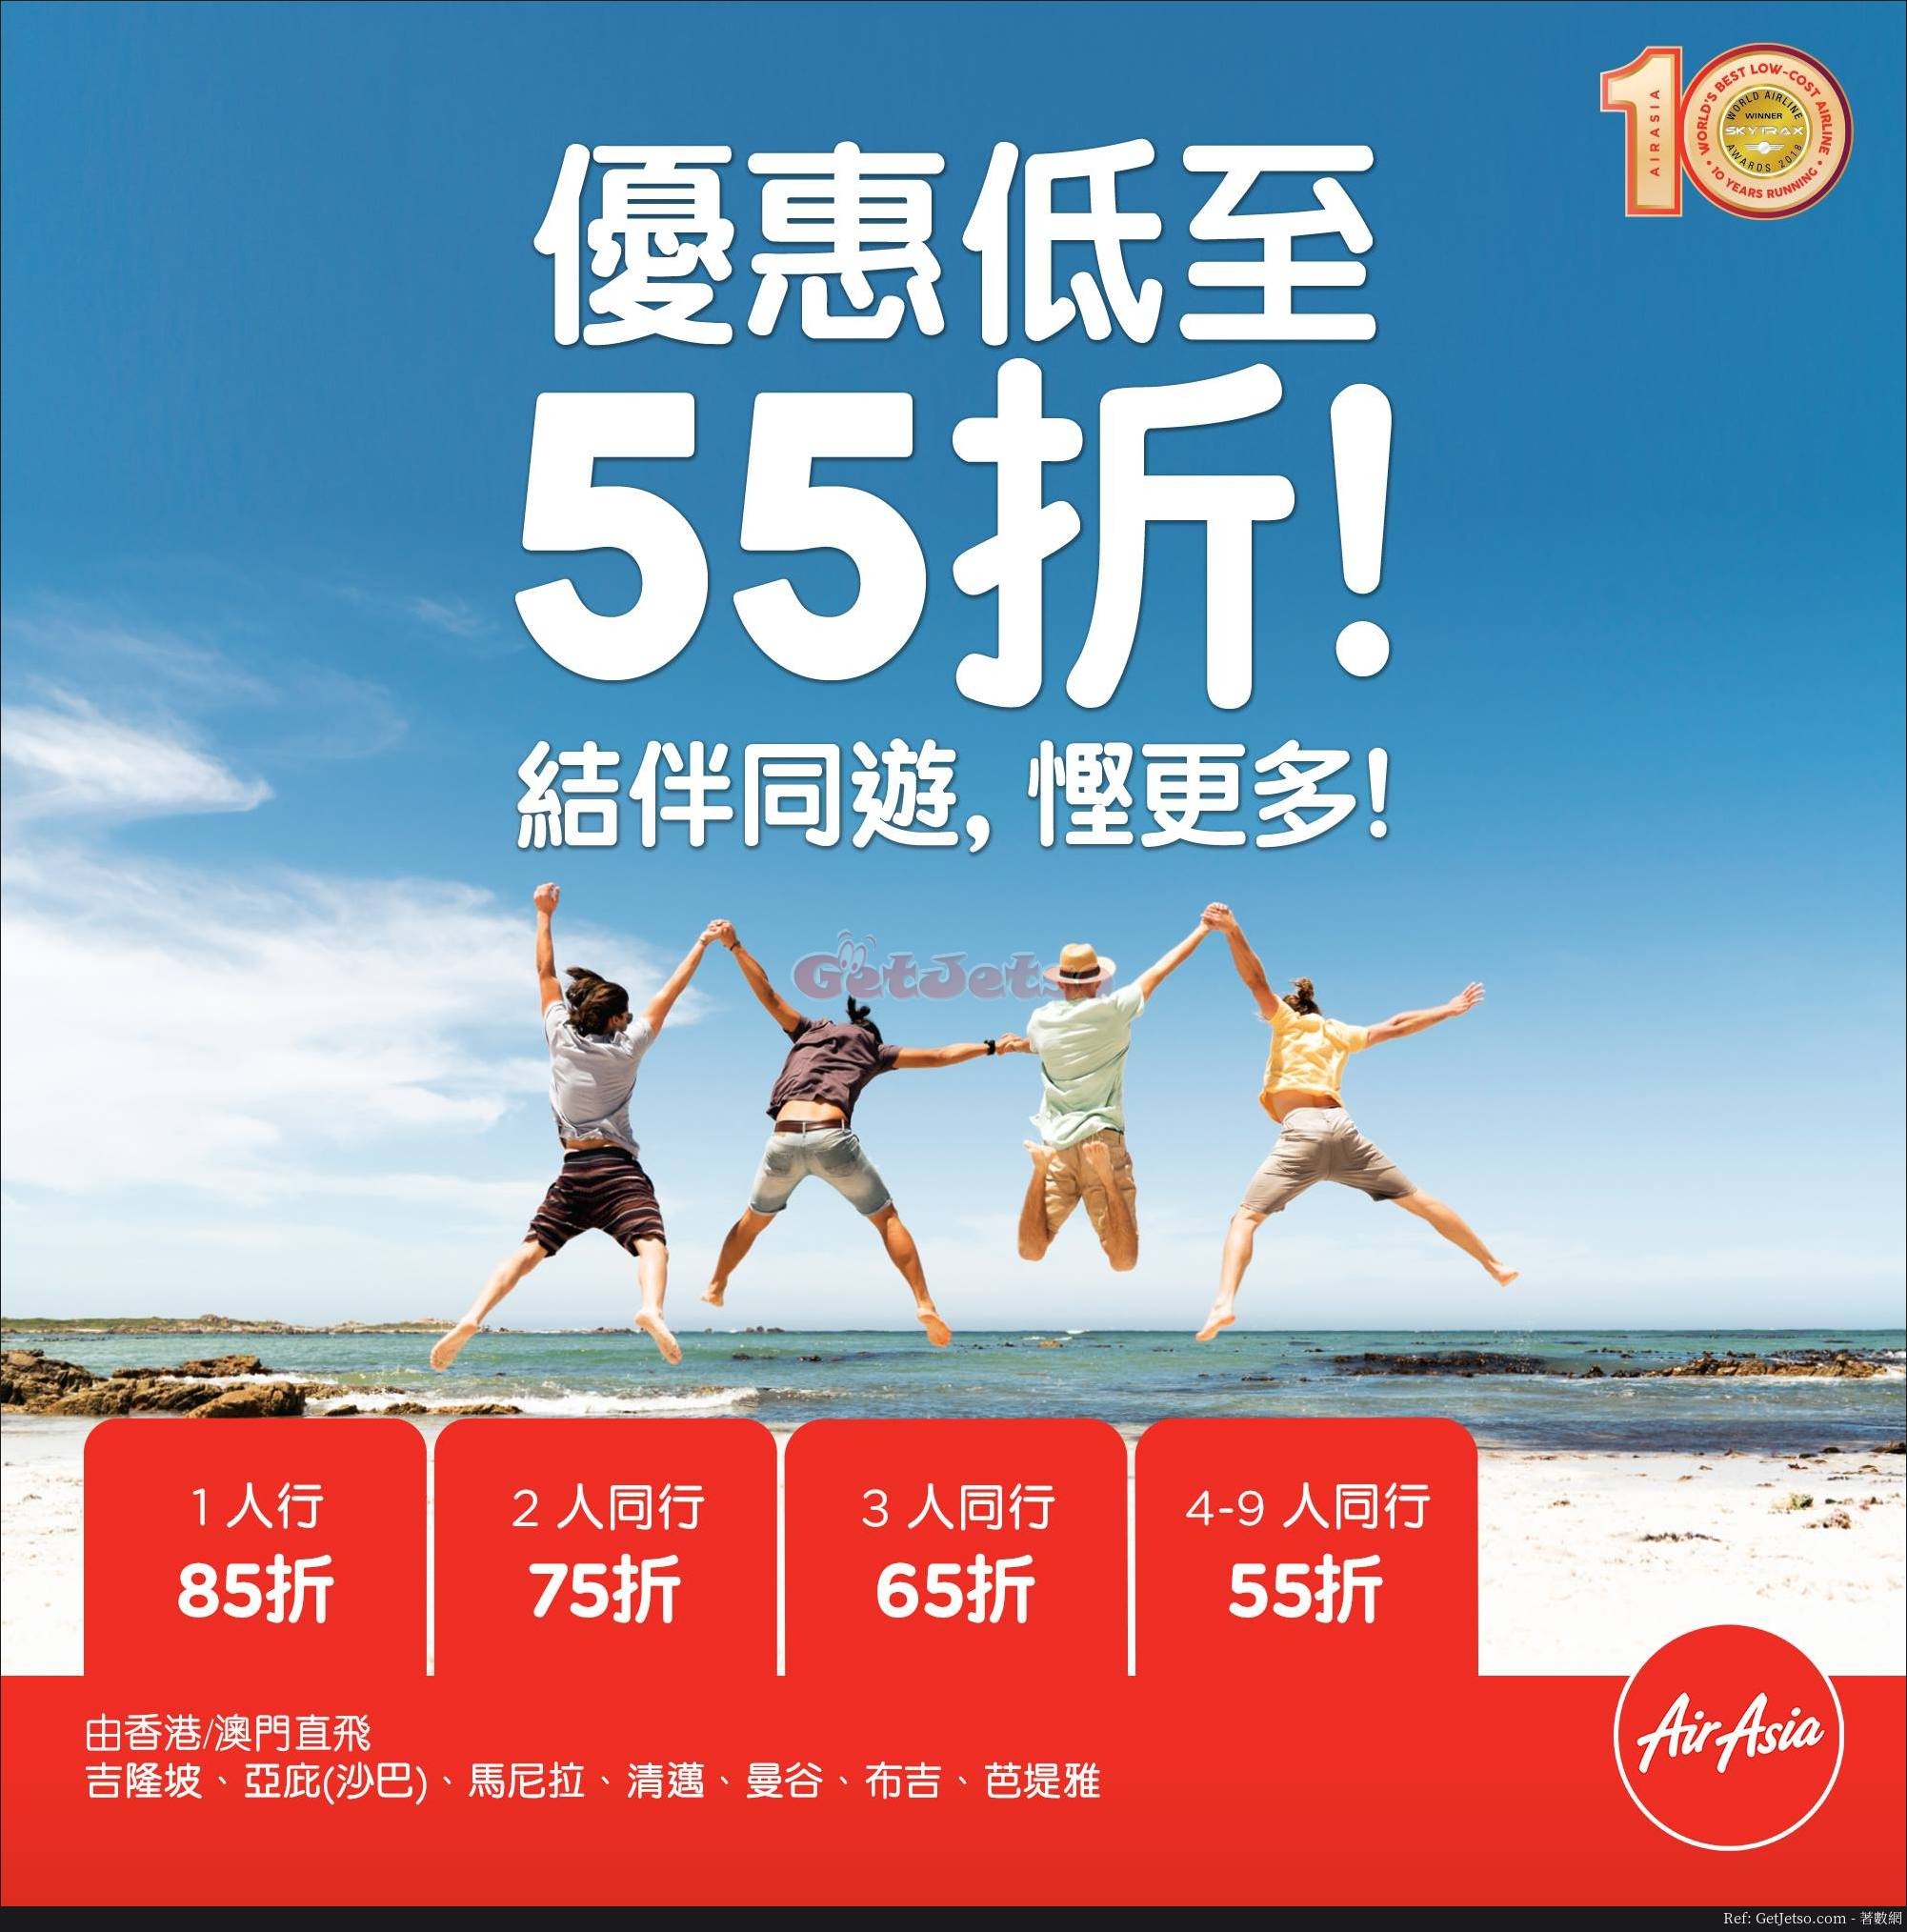 AirAsia 4人同行低至55折機票優惠(至18年8月19日)圖片1